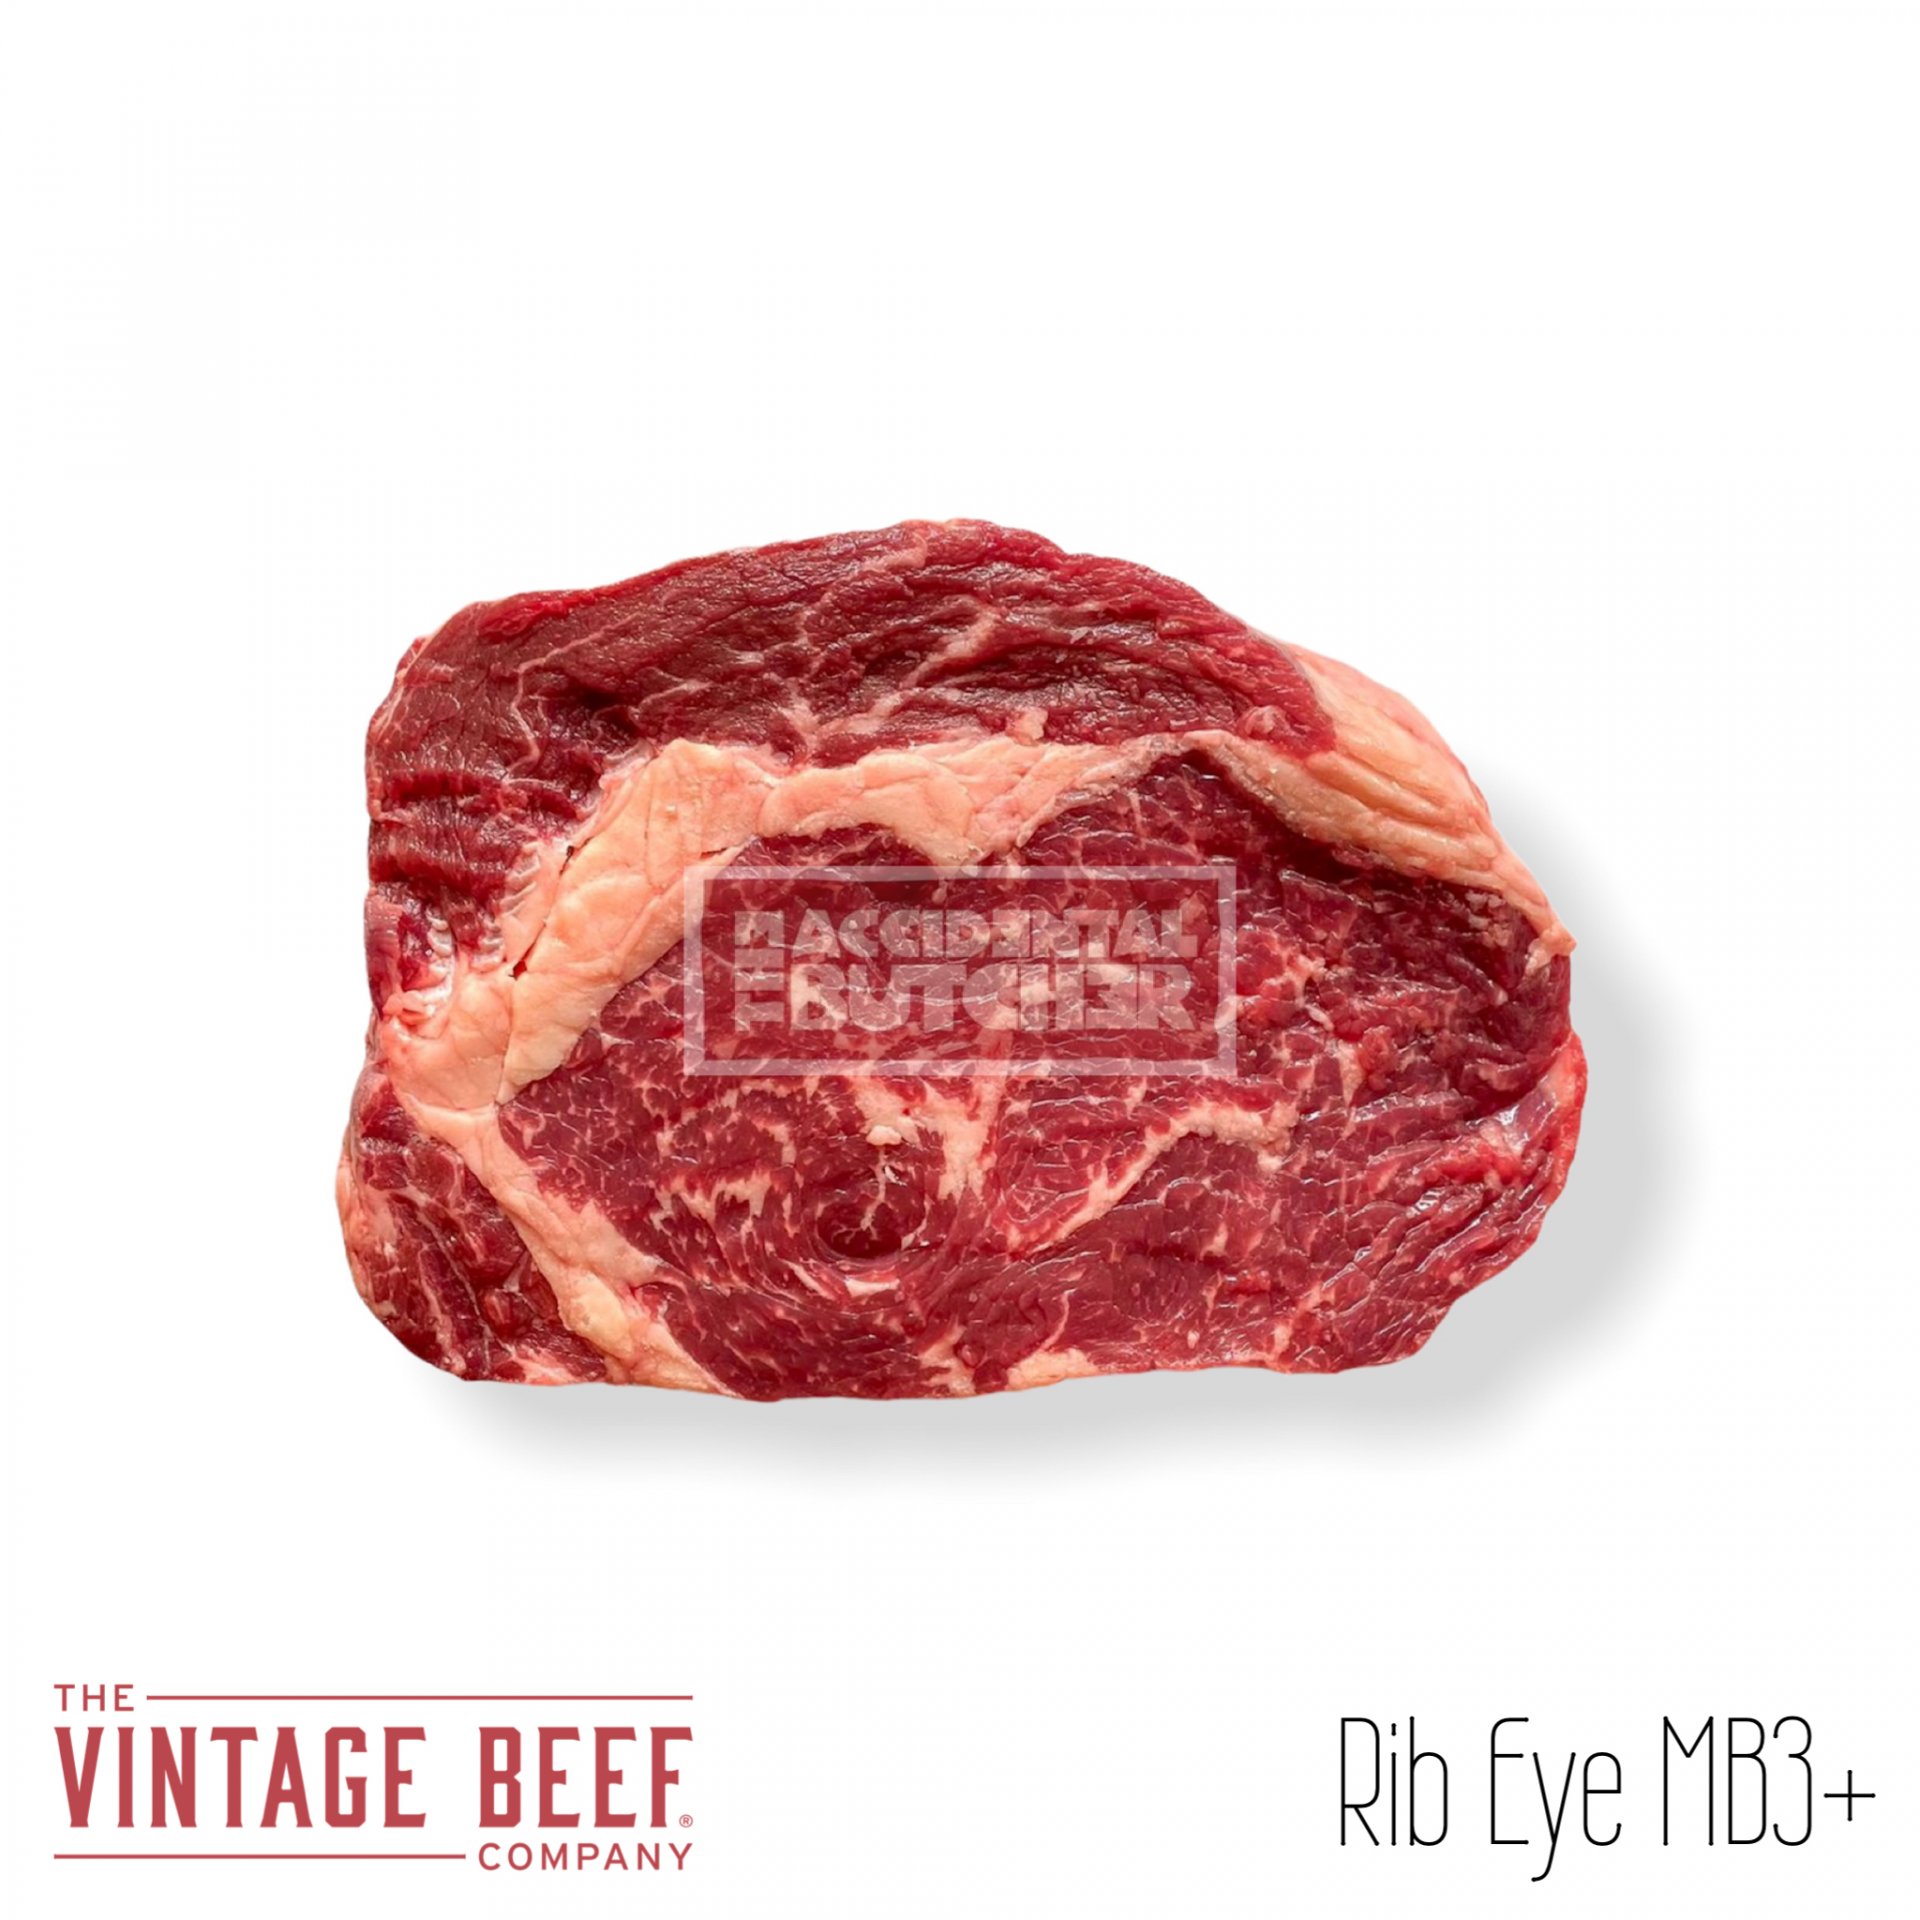 Vintage Galiciana Beef Rib Eye MB3+